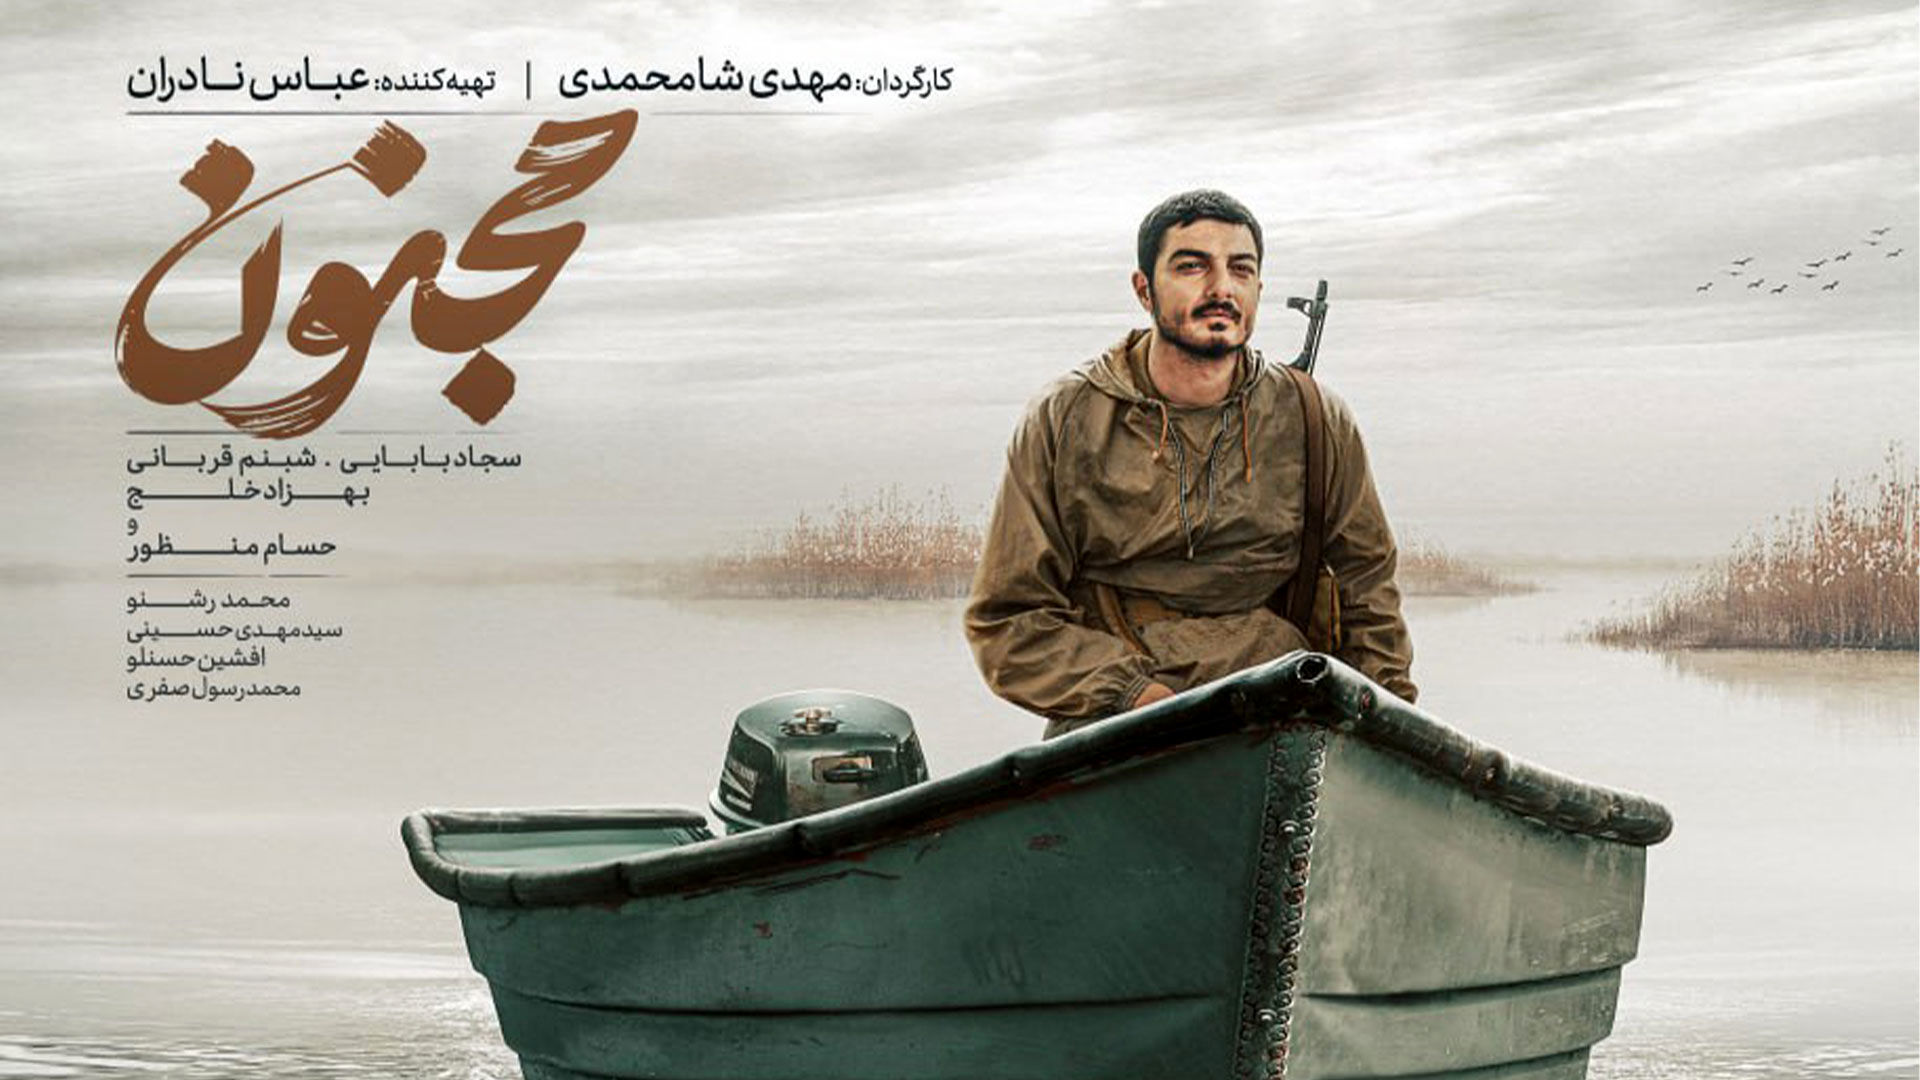 اعلام نامزدهای جشنواره فیلم فجر/ «مجنون» رکورددار شد